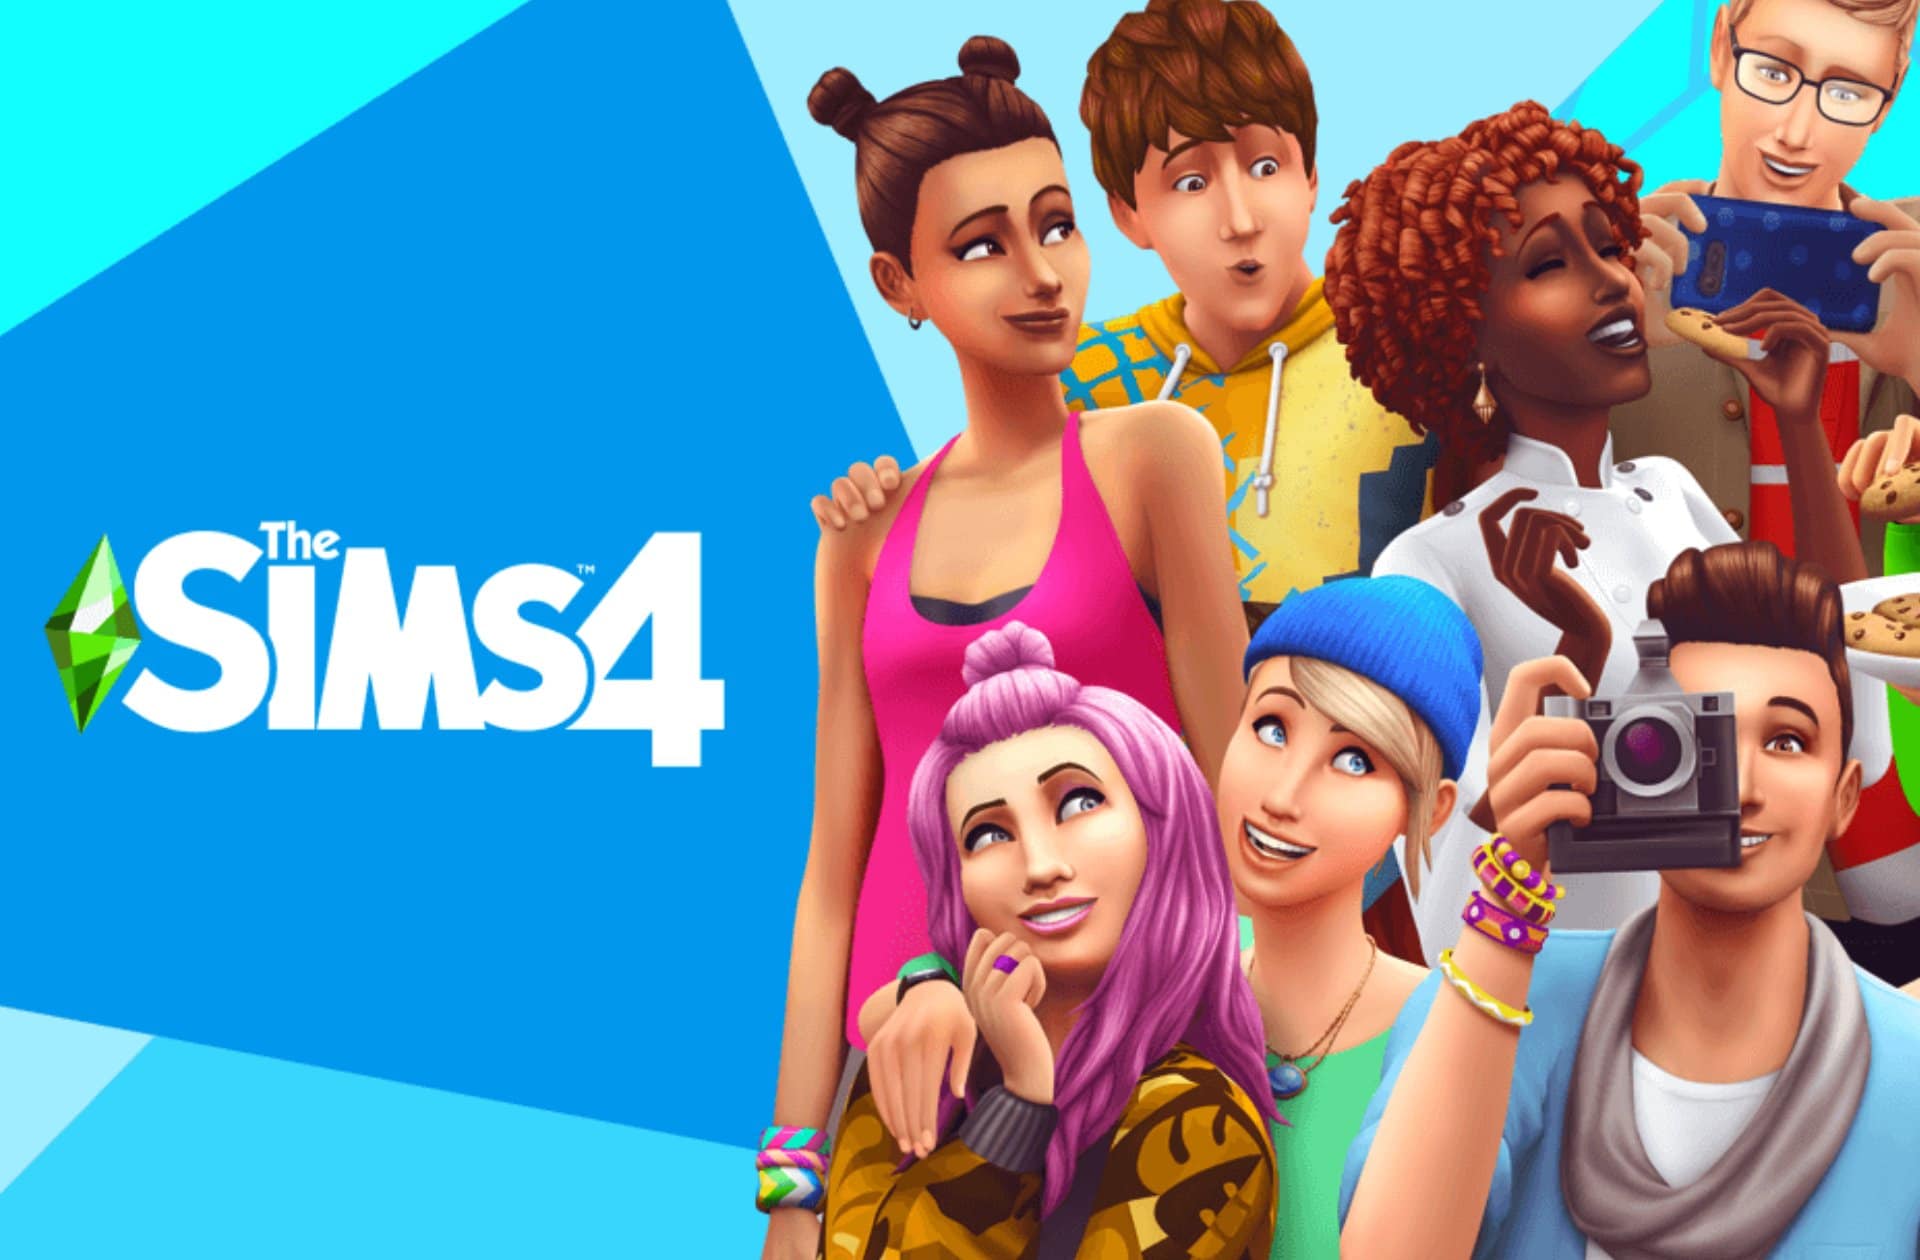 Ce mardi soir sur Twitch, Mélanie modélise la rédac sur « Les Sims 4 » !